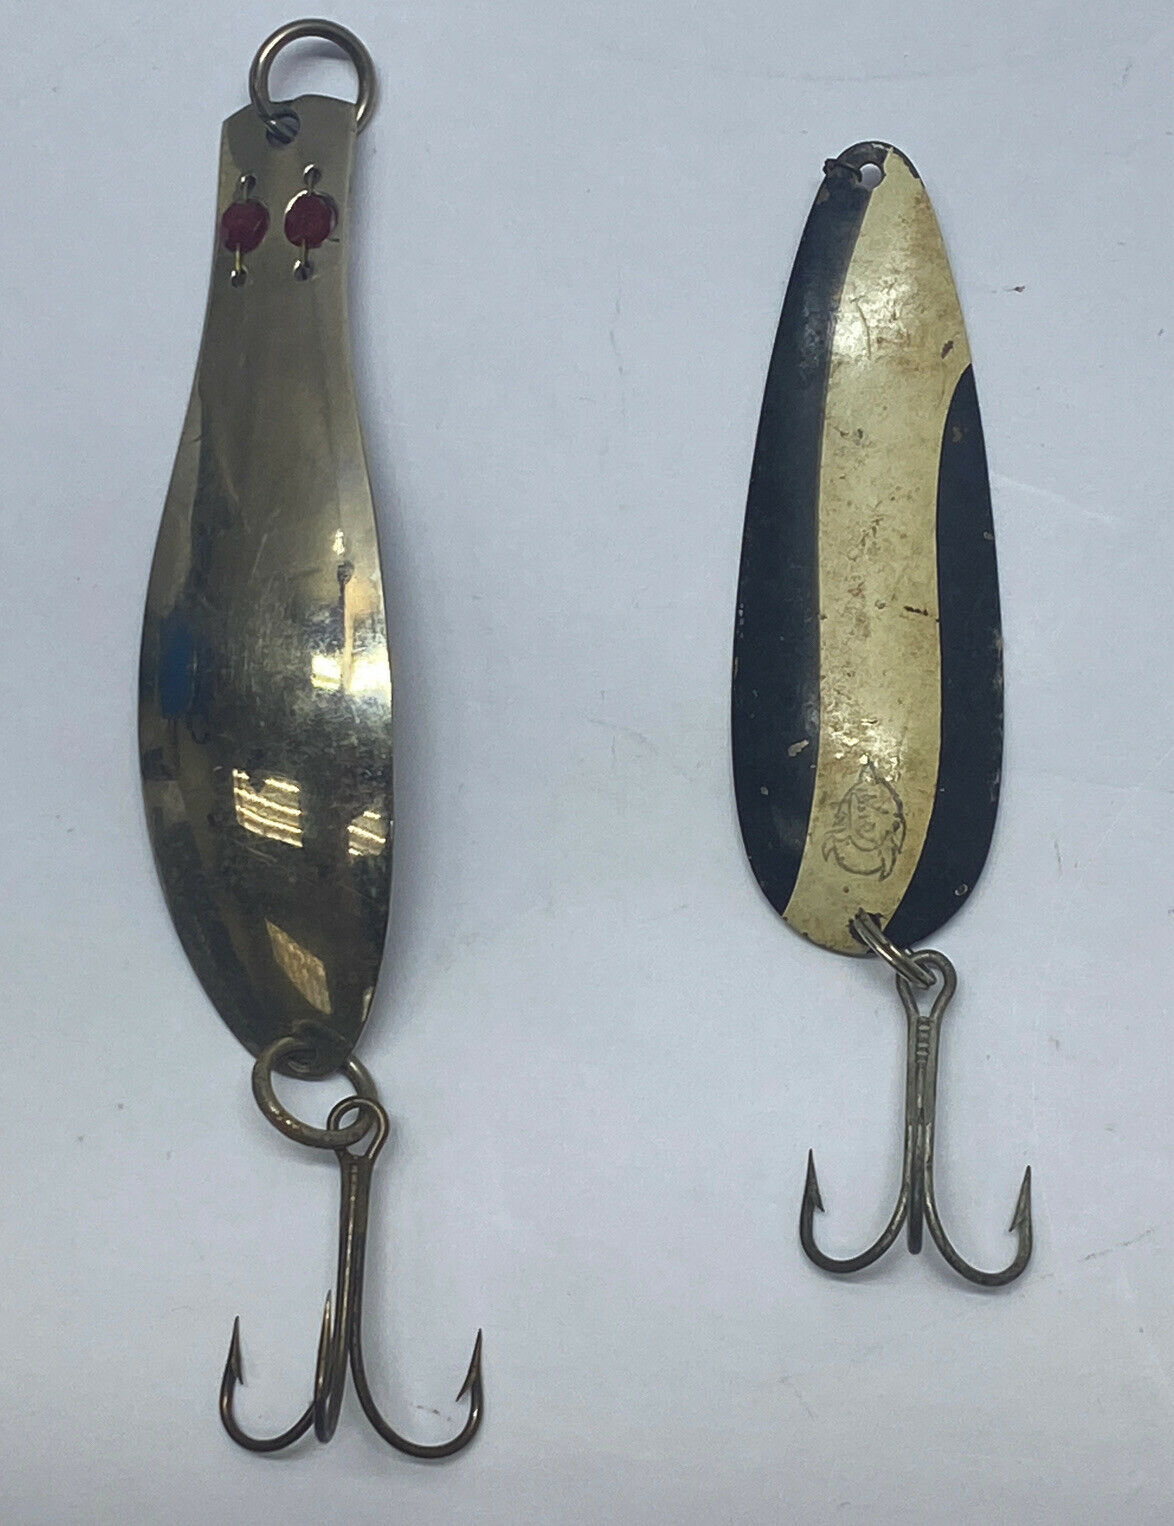 2 Vintage Metal Spoon Fishing Lures 